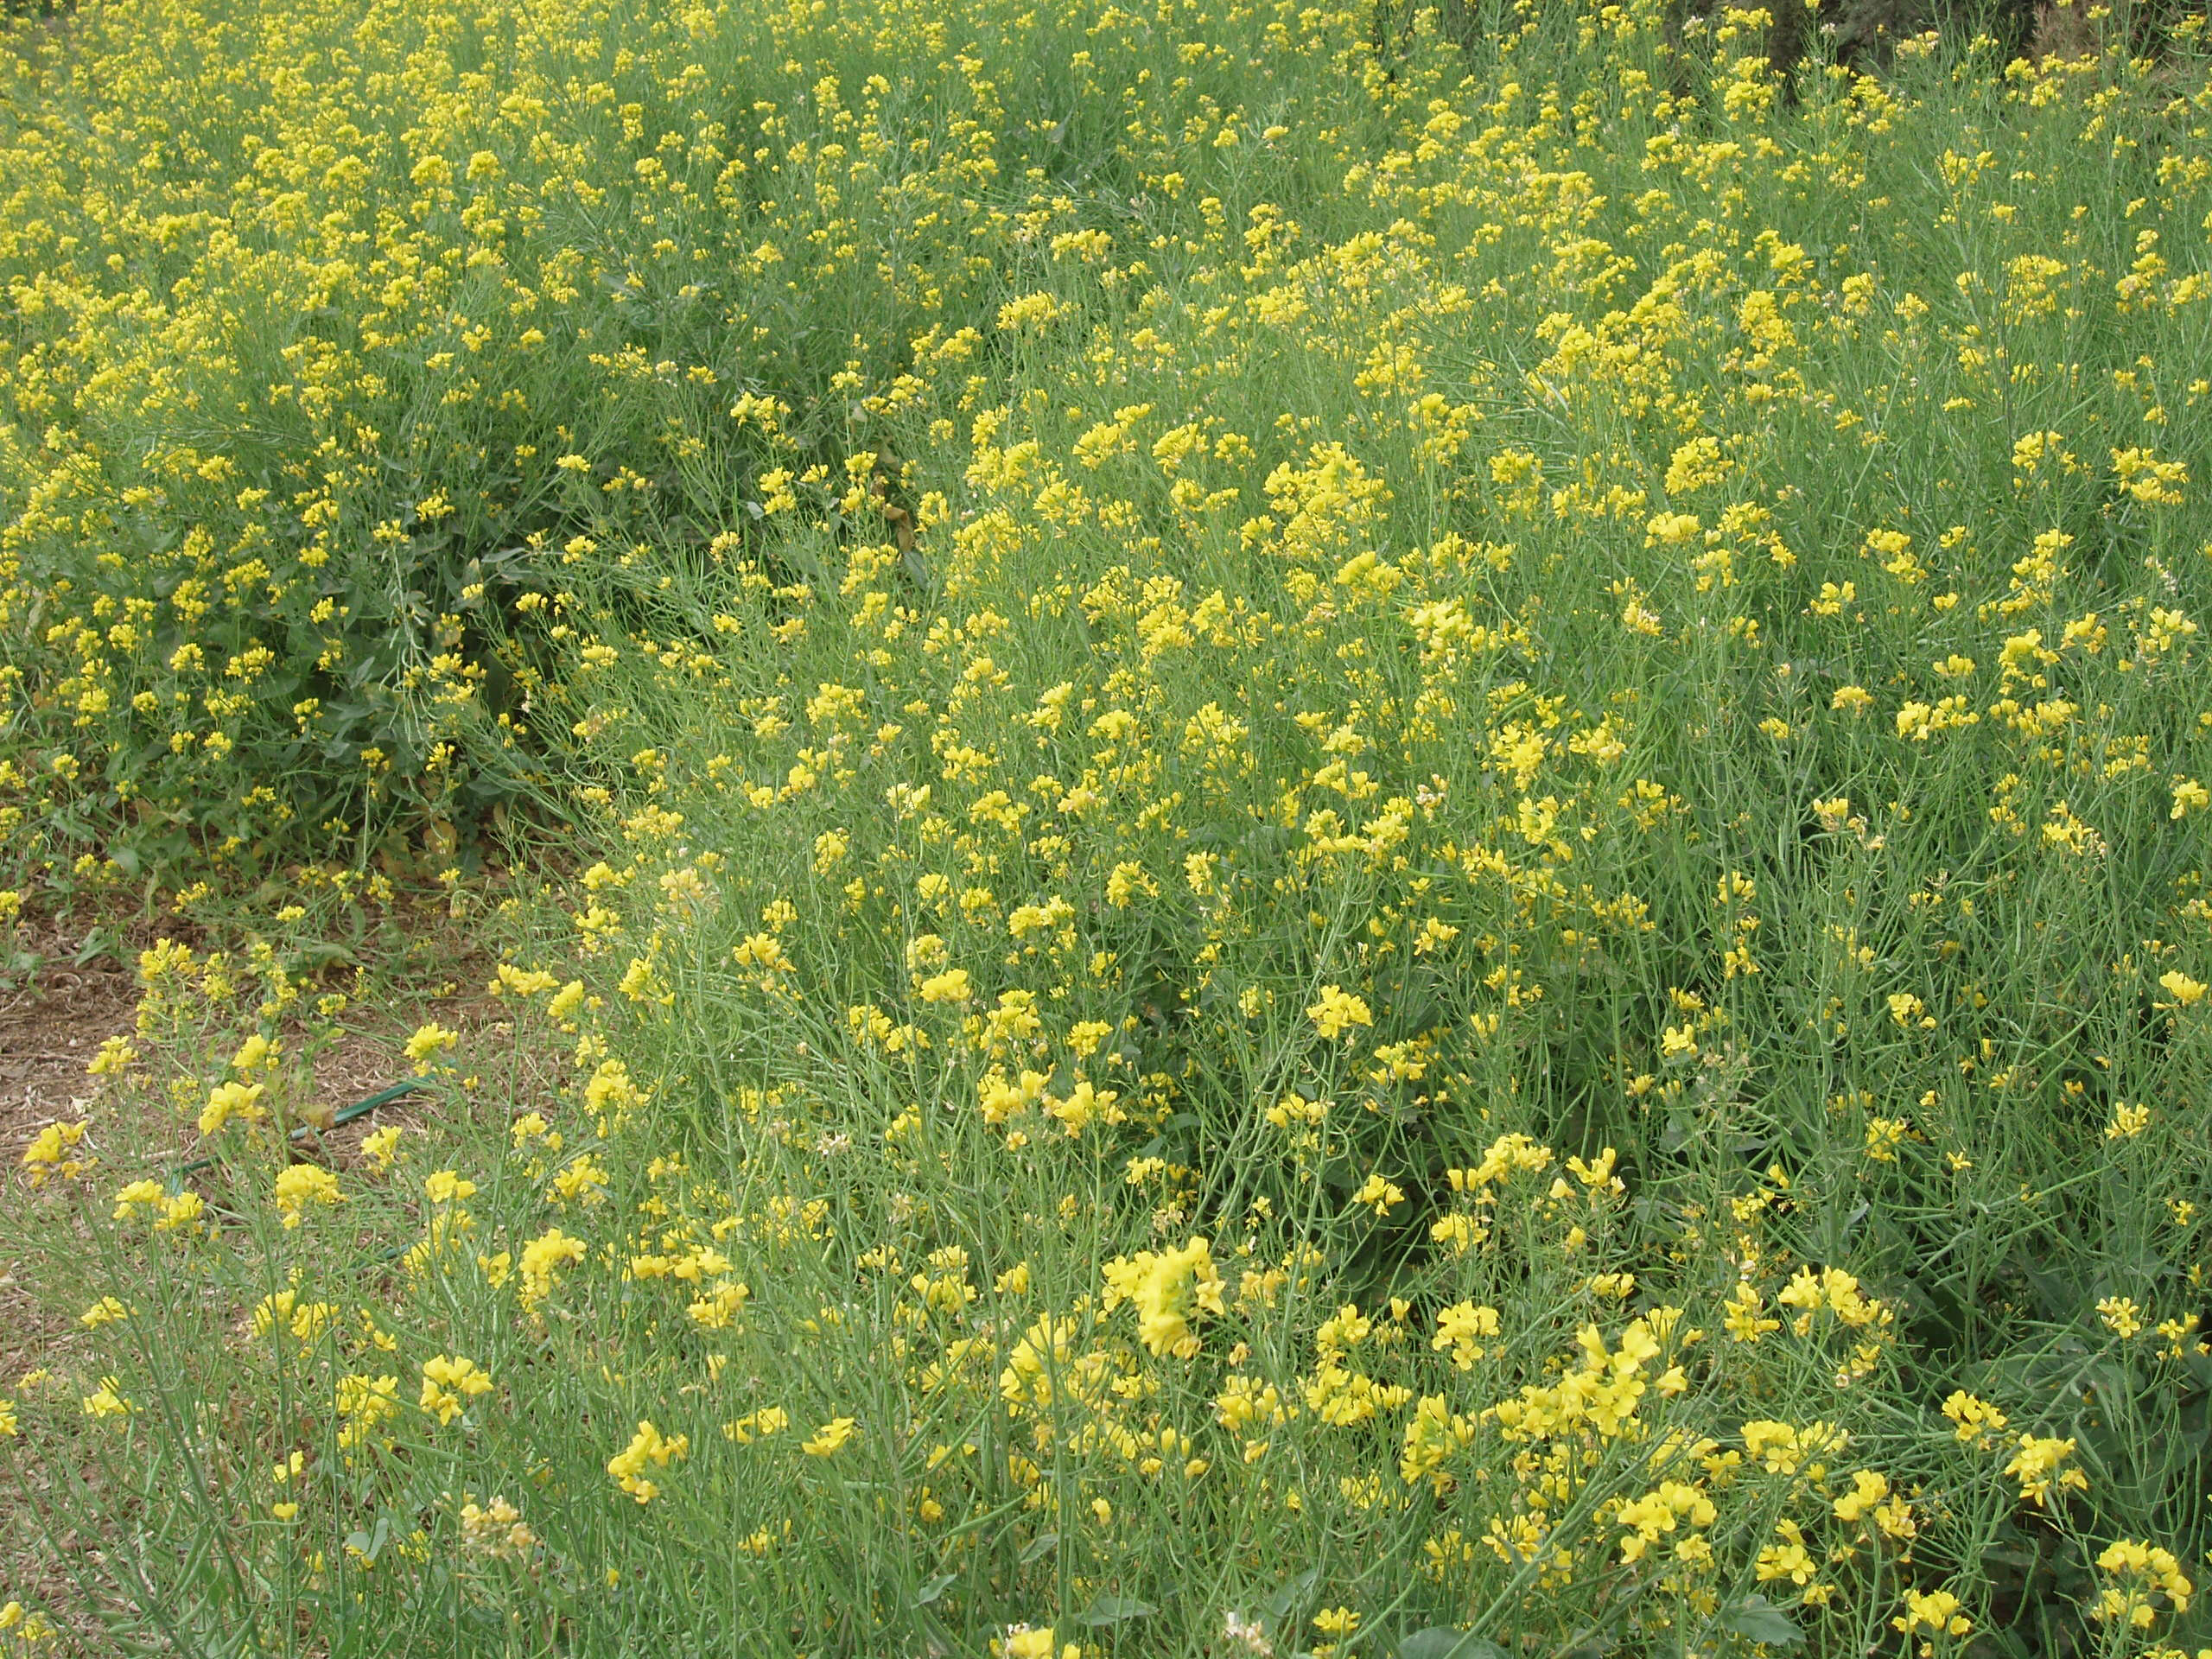 Image of Brassica rapa subsp. oleifera